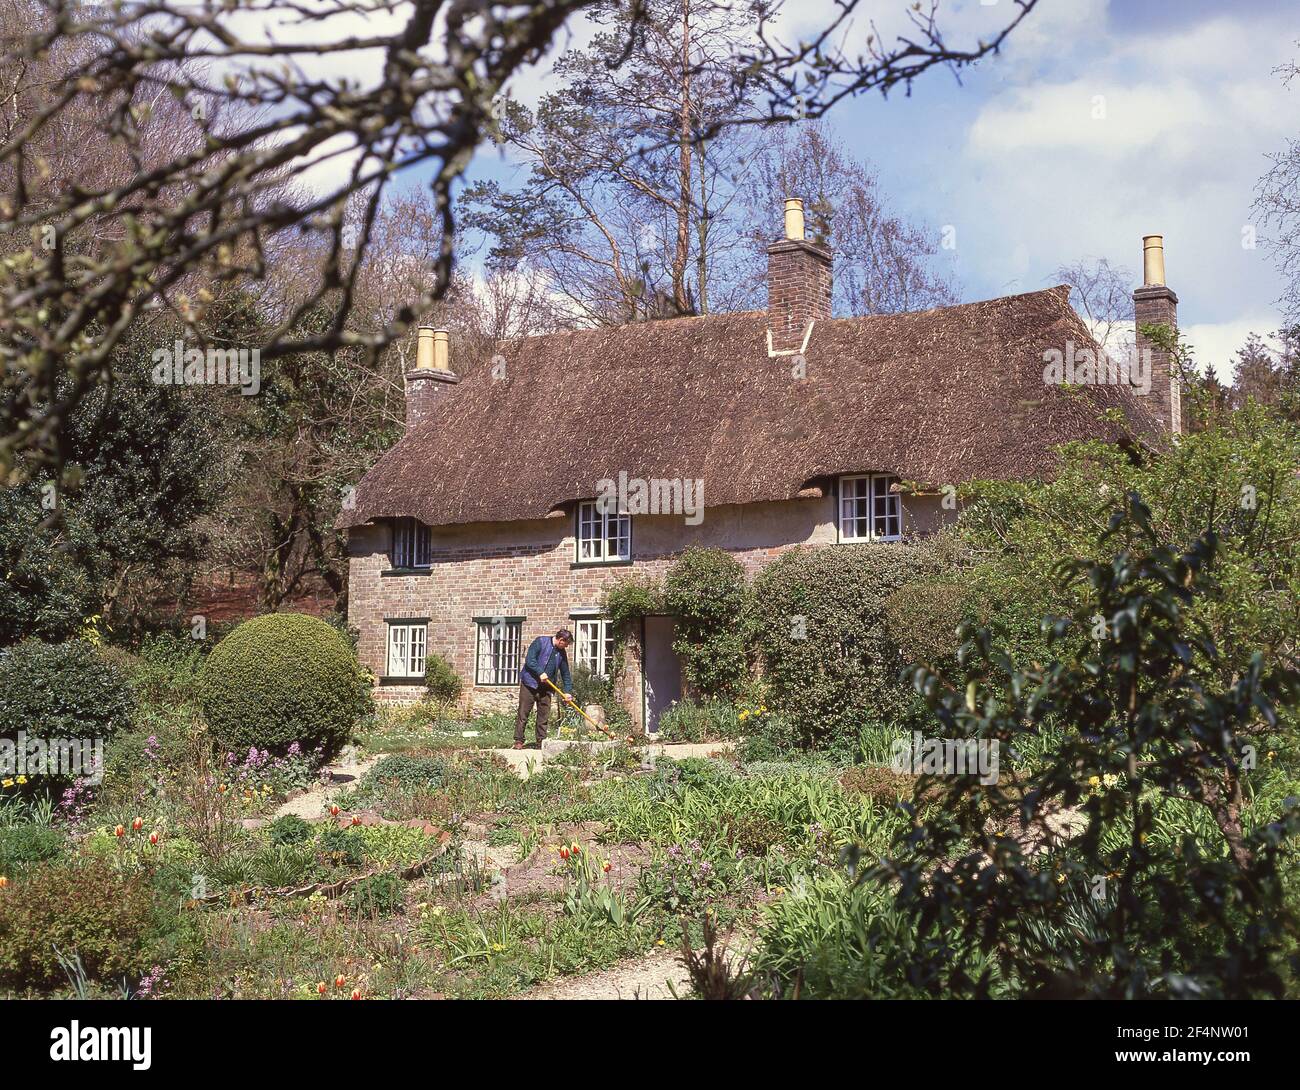 Thomas Hardy's cottage and garden, Higher Bockhampton, Dorset, England, United Kingdom Stock Photo